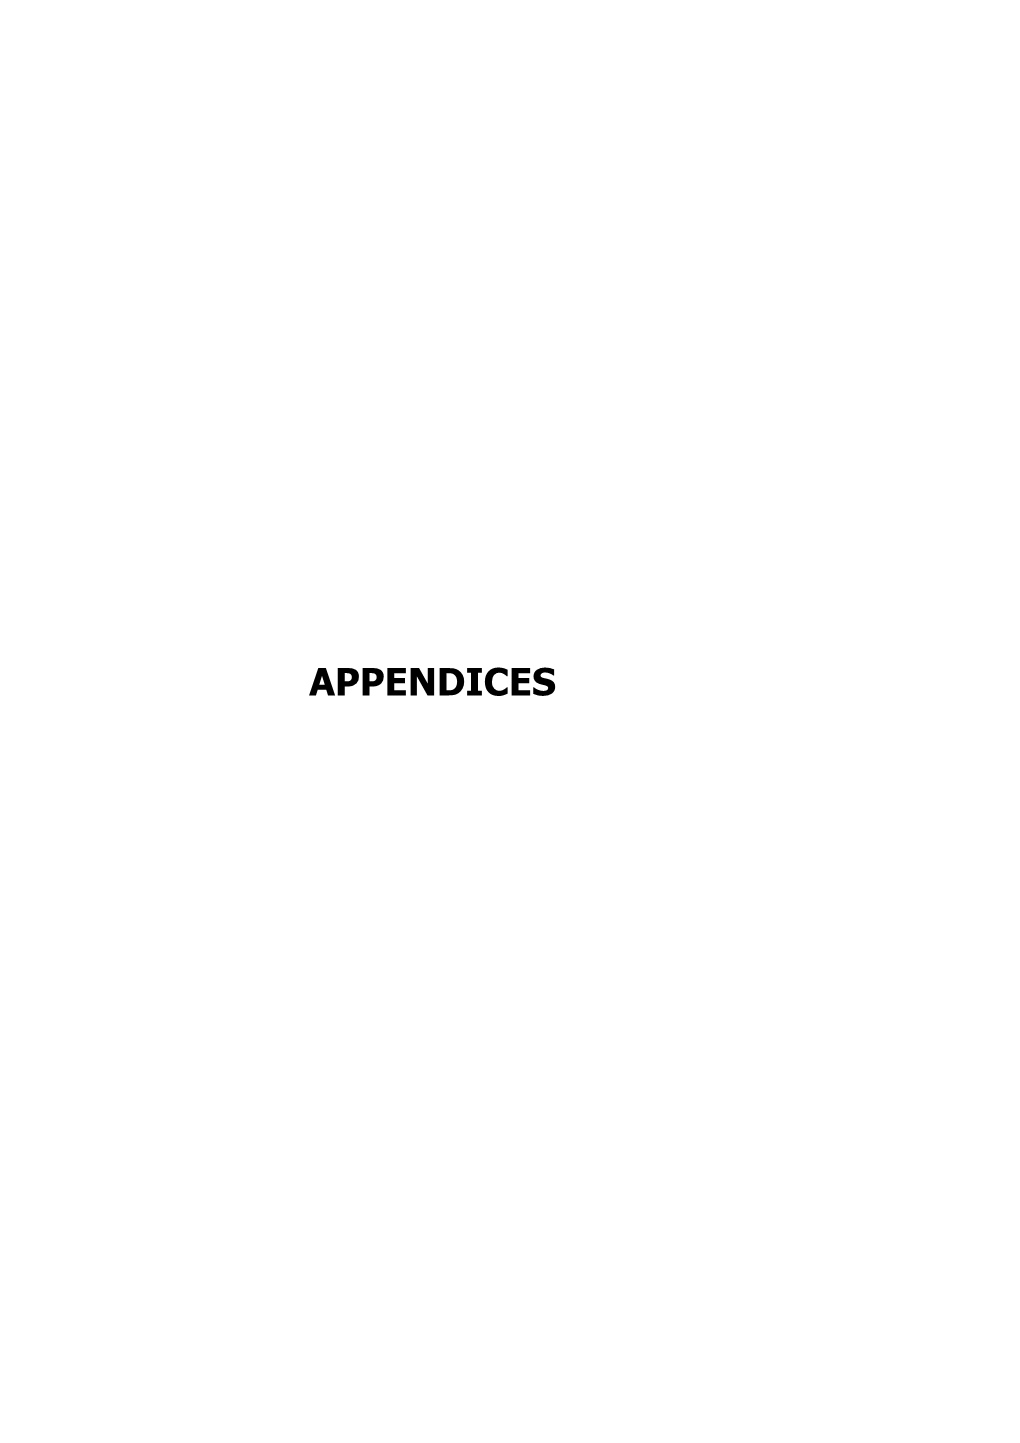 APPENDICES Appendix – I (Refer Paragraph 1.1; Page 1)